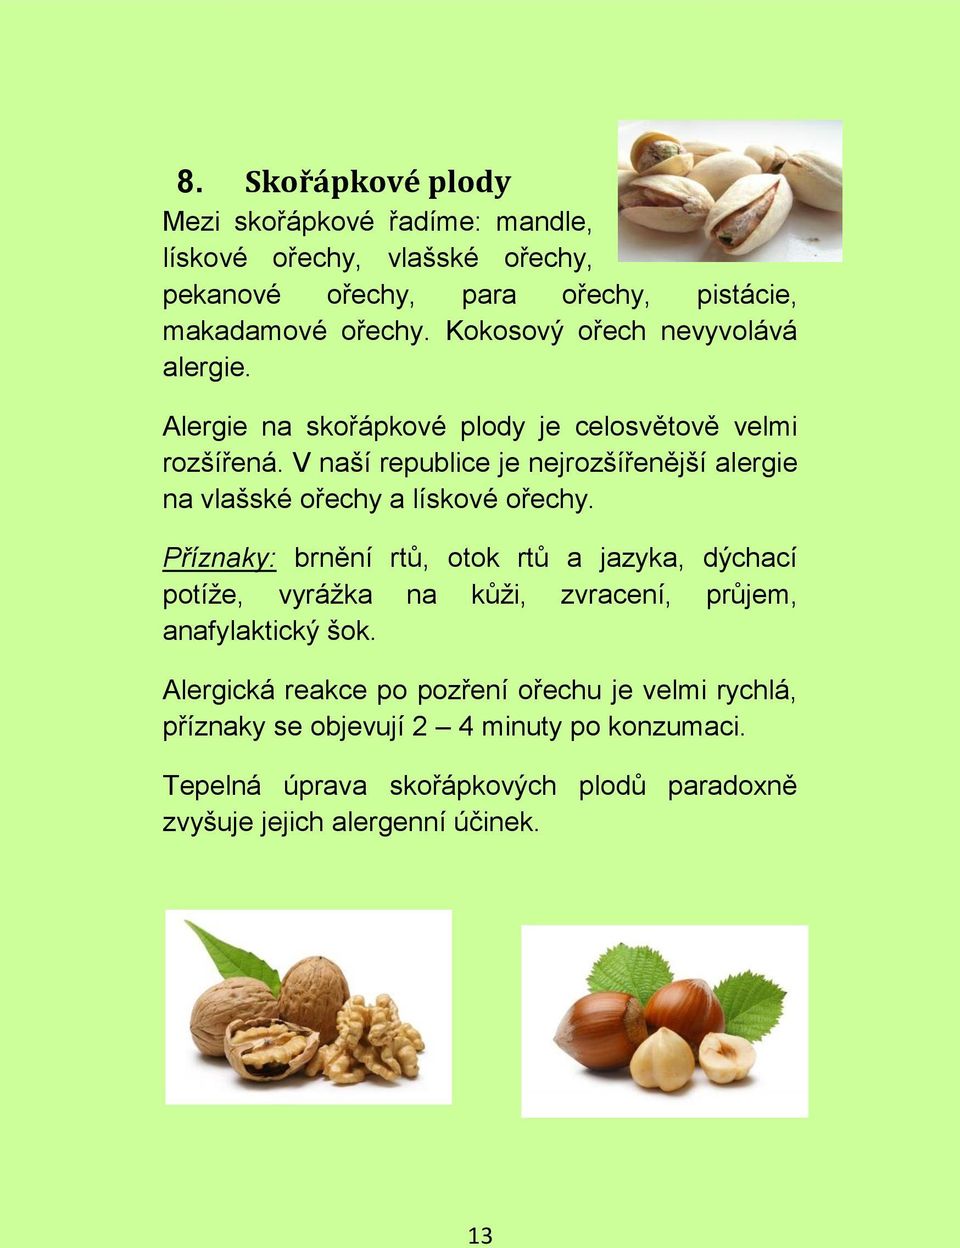 V naší republice je nejrozšířenější alergie na vlašské ořechy a lískové ořechy.